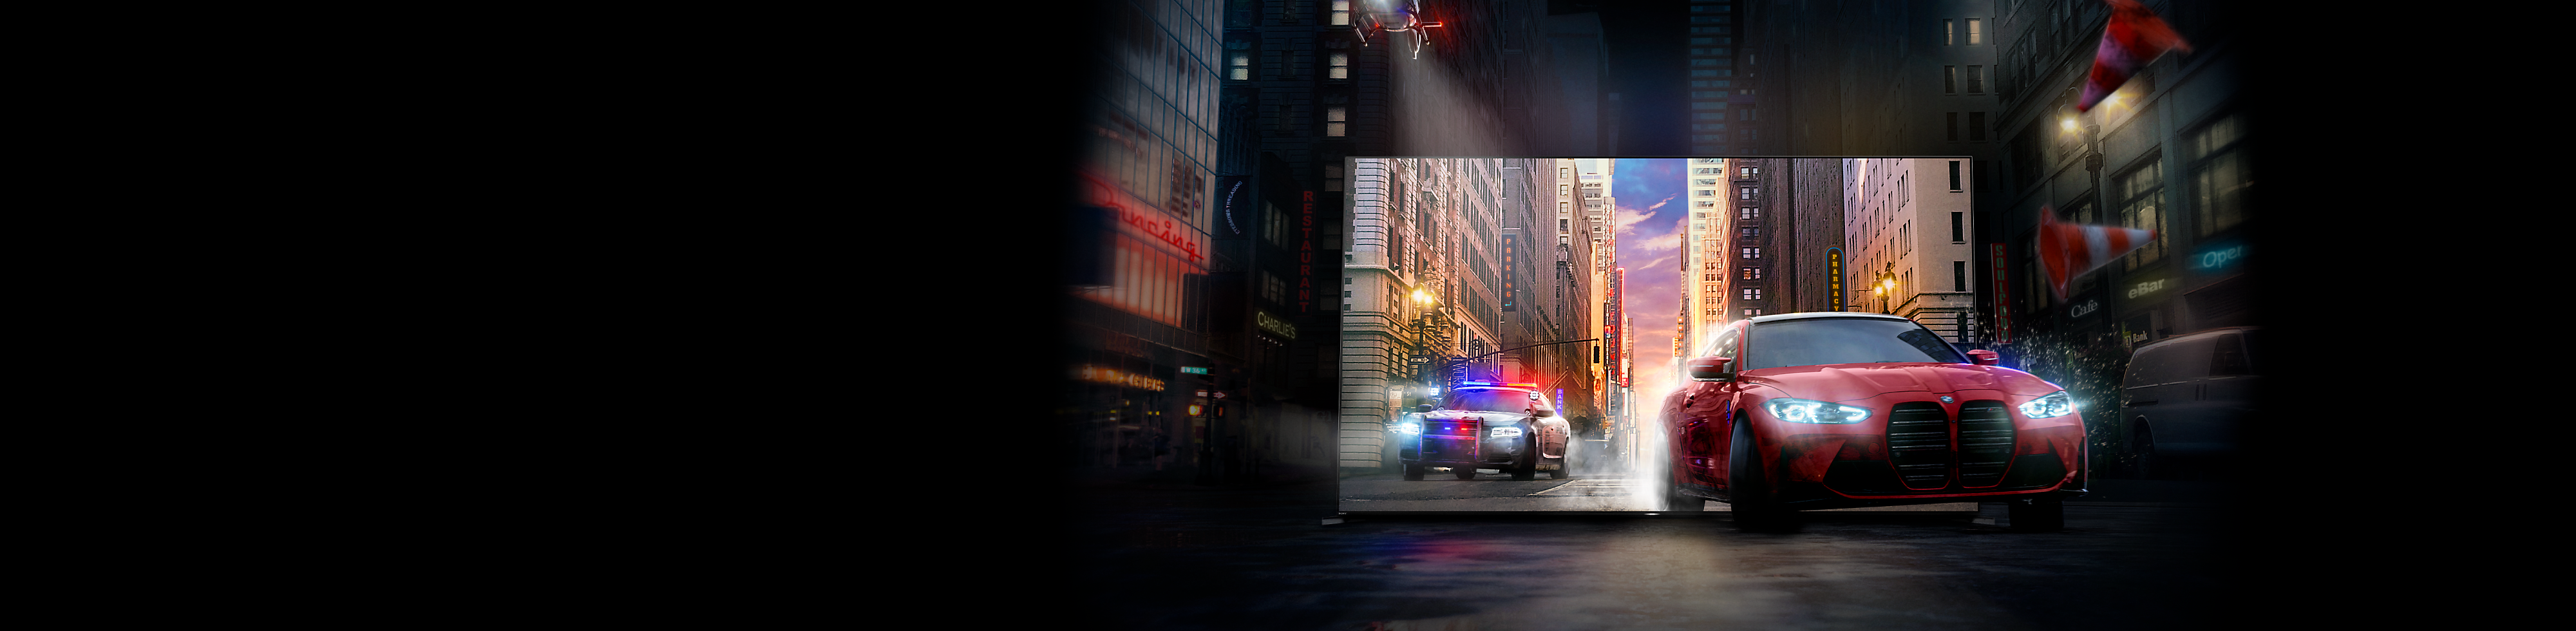 Een rode auto, gevolgd door een politieauto rijdt uit het scherm van een BRAVIA-tv naar een straat in een stad